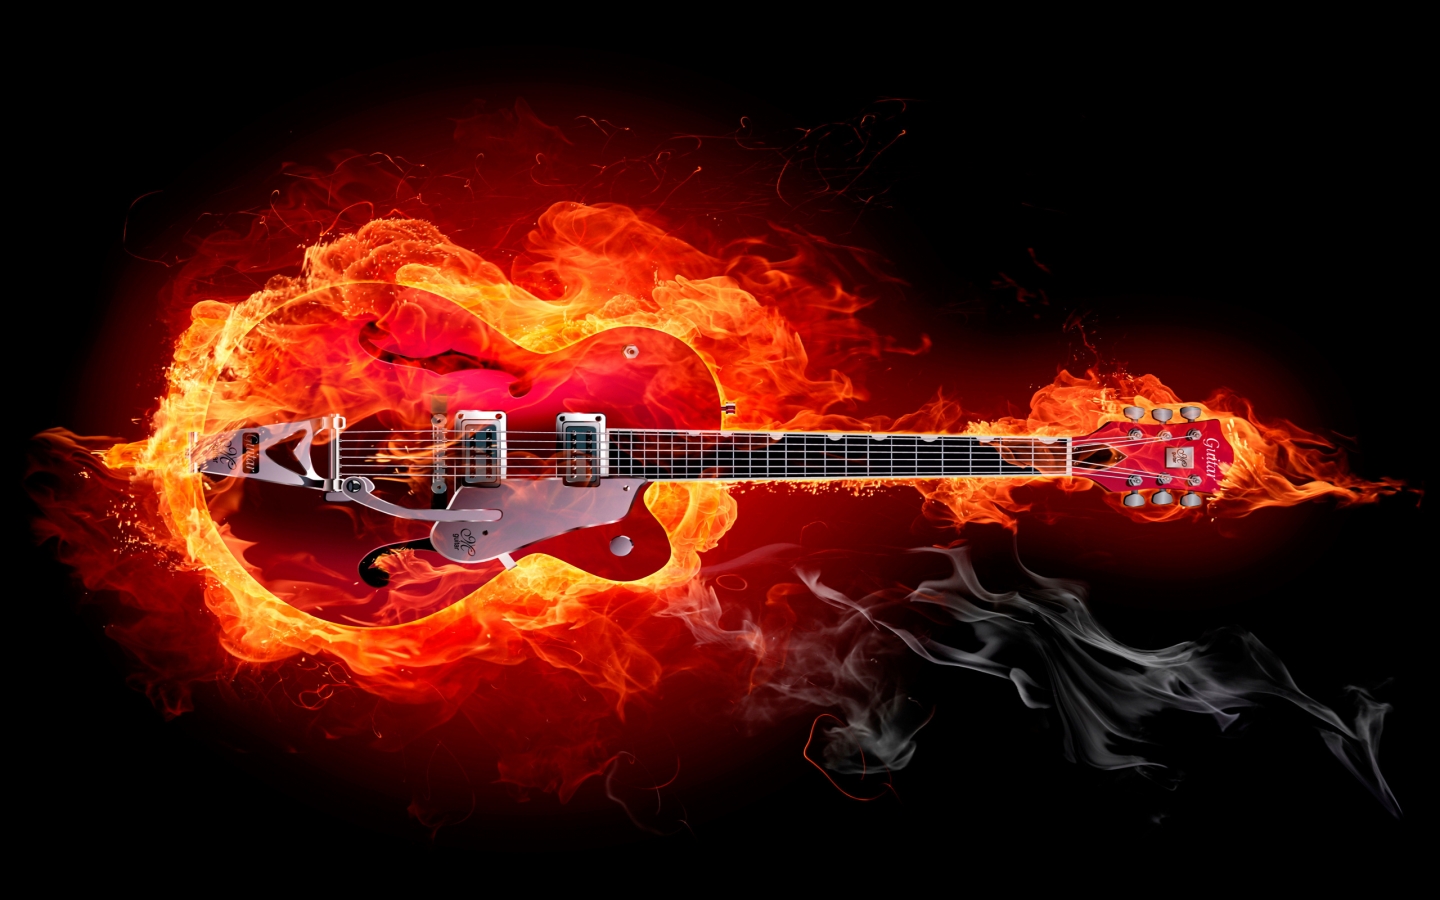 Fire Guitar for 1440 x 900 widescreen resolution